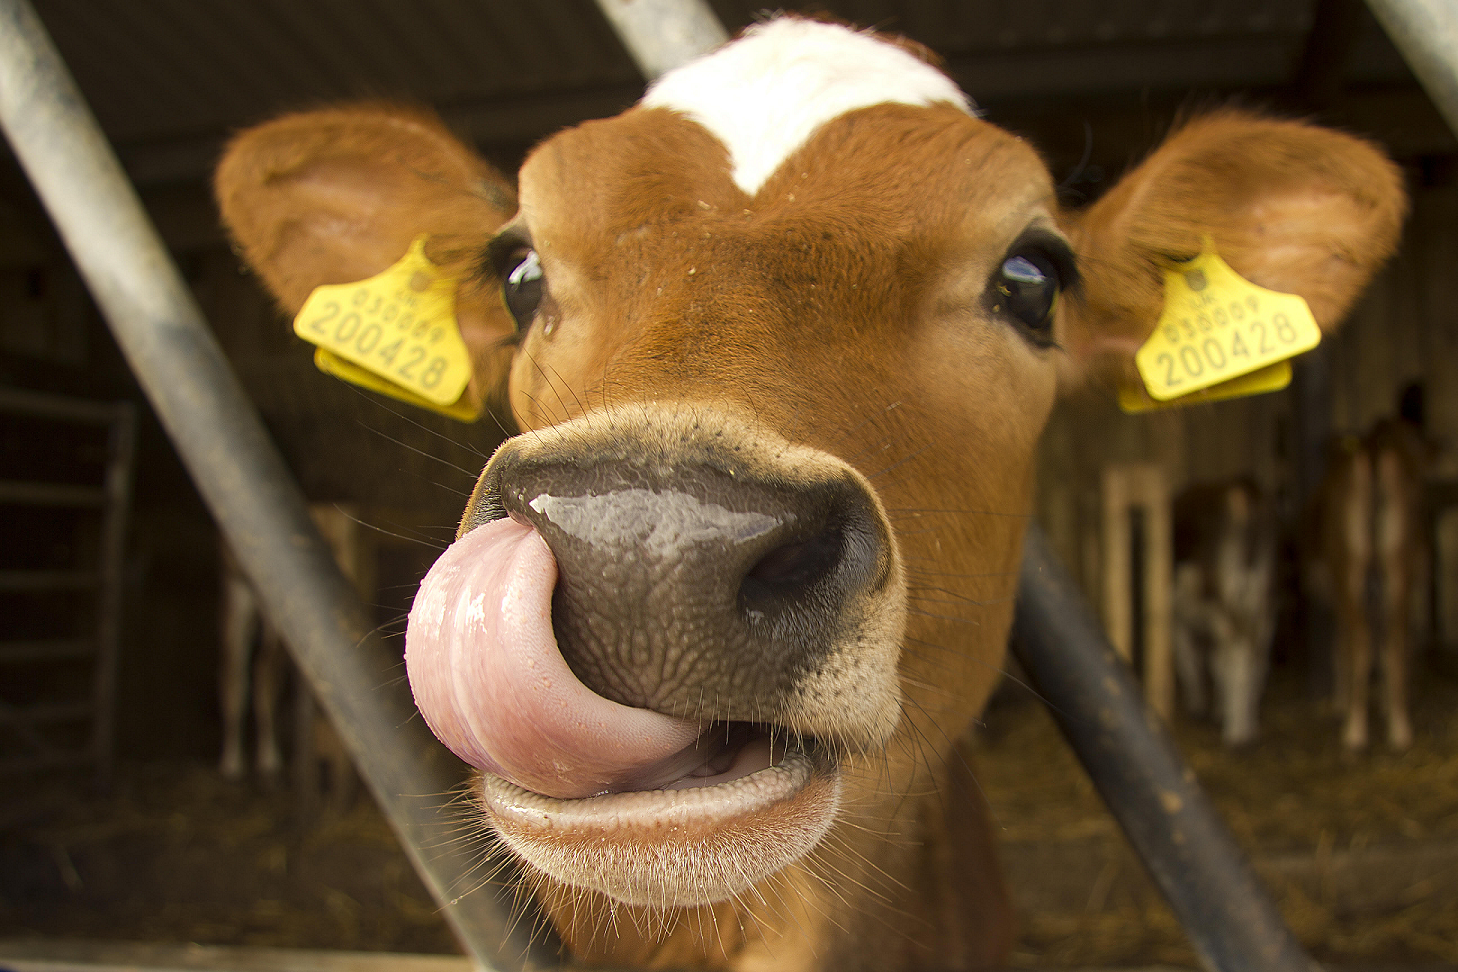 Cow’s milk vs Non-dairy Alternatives